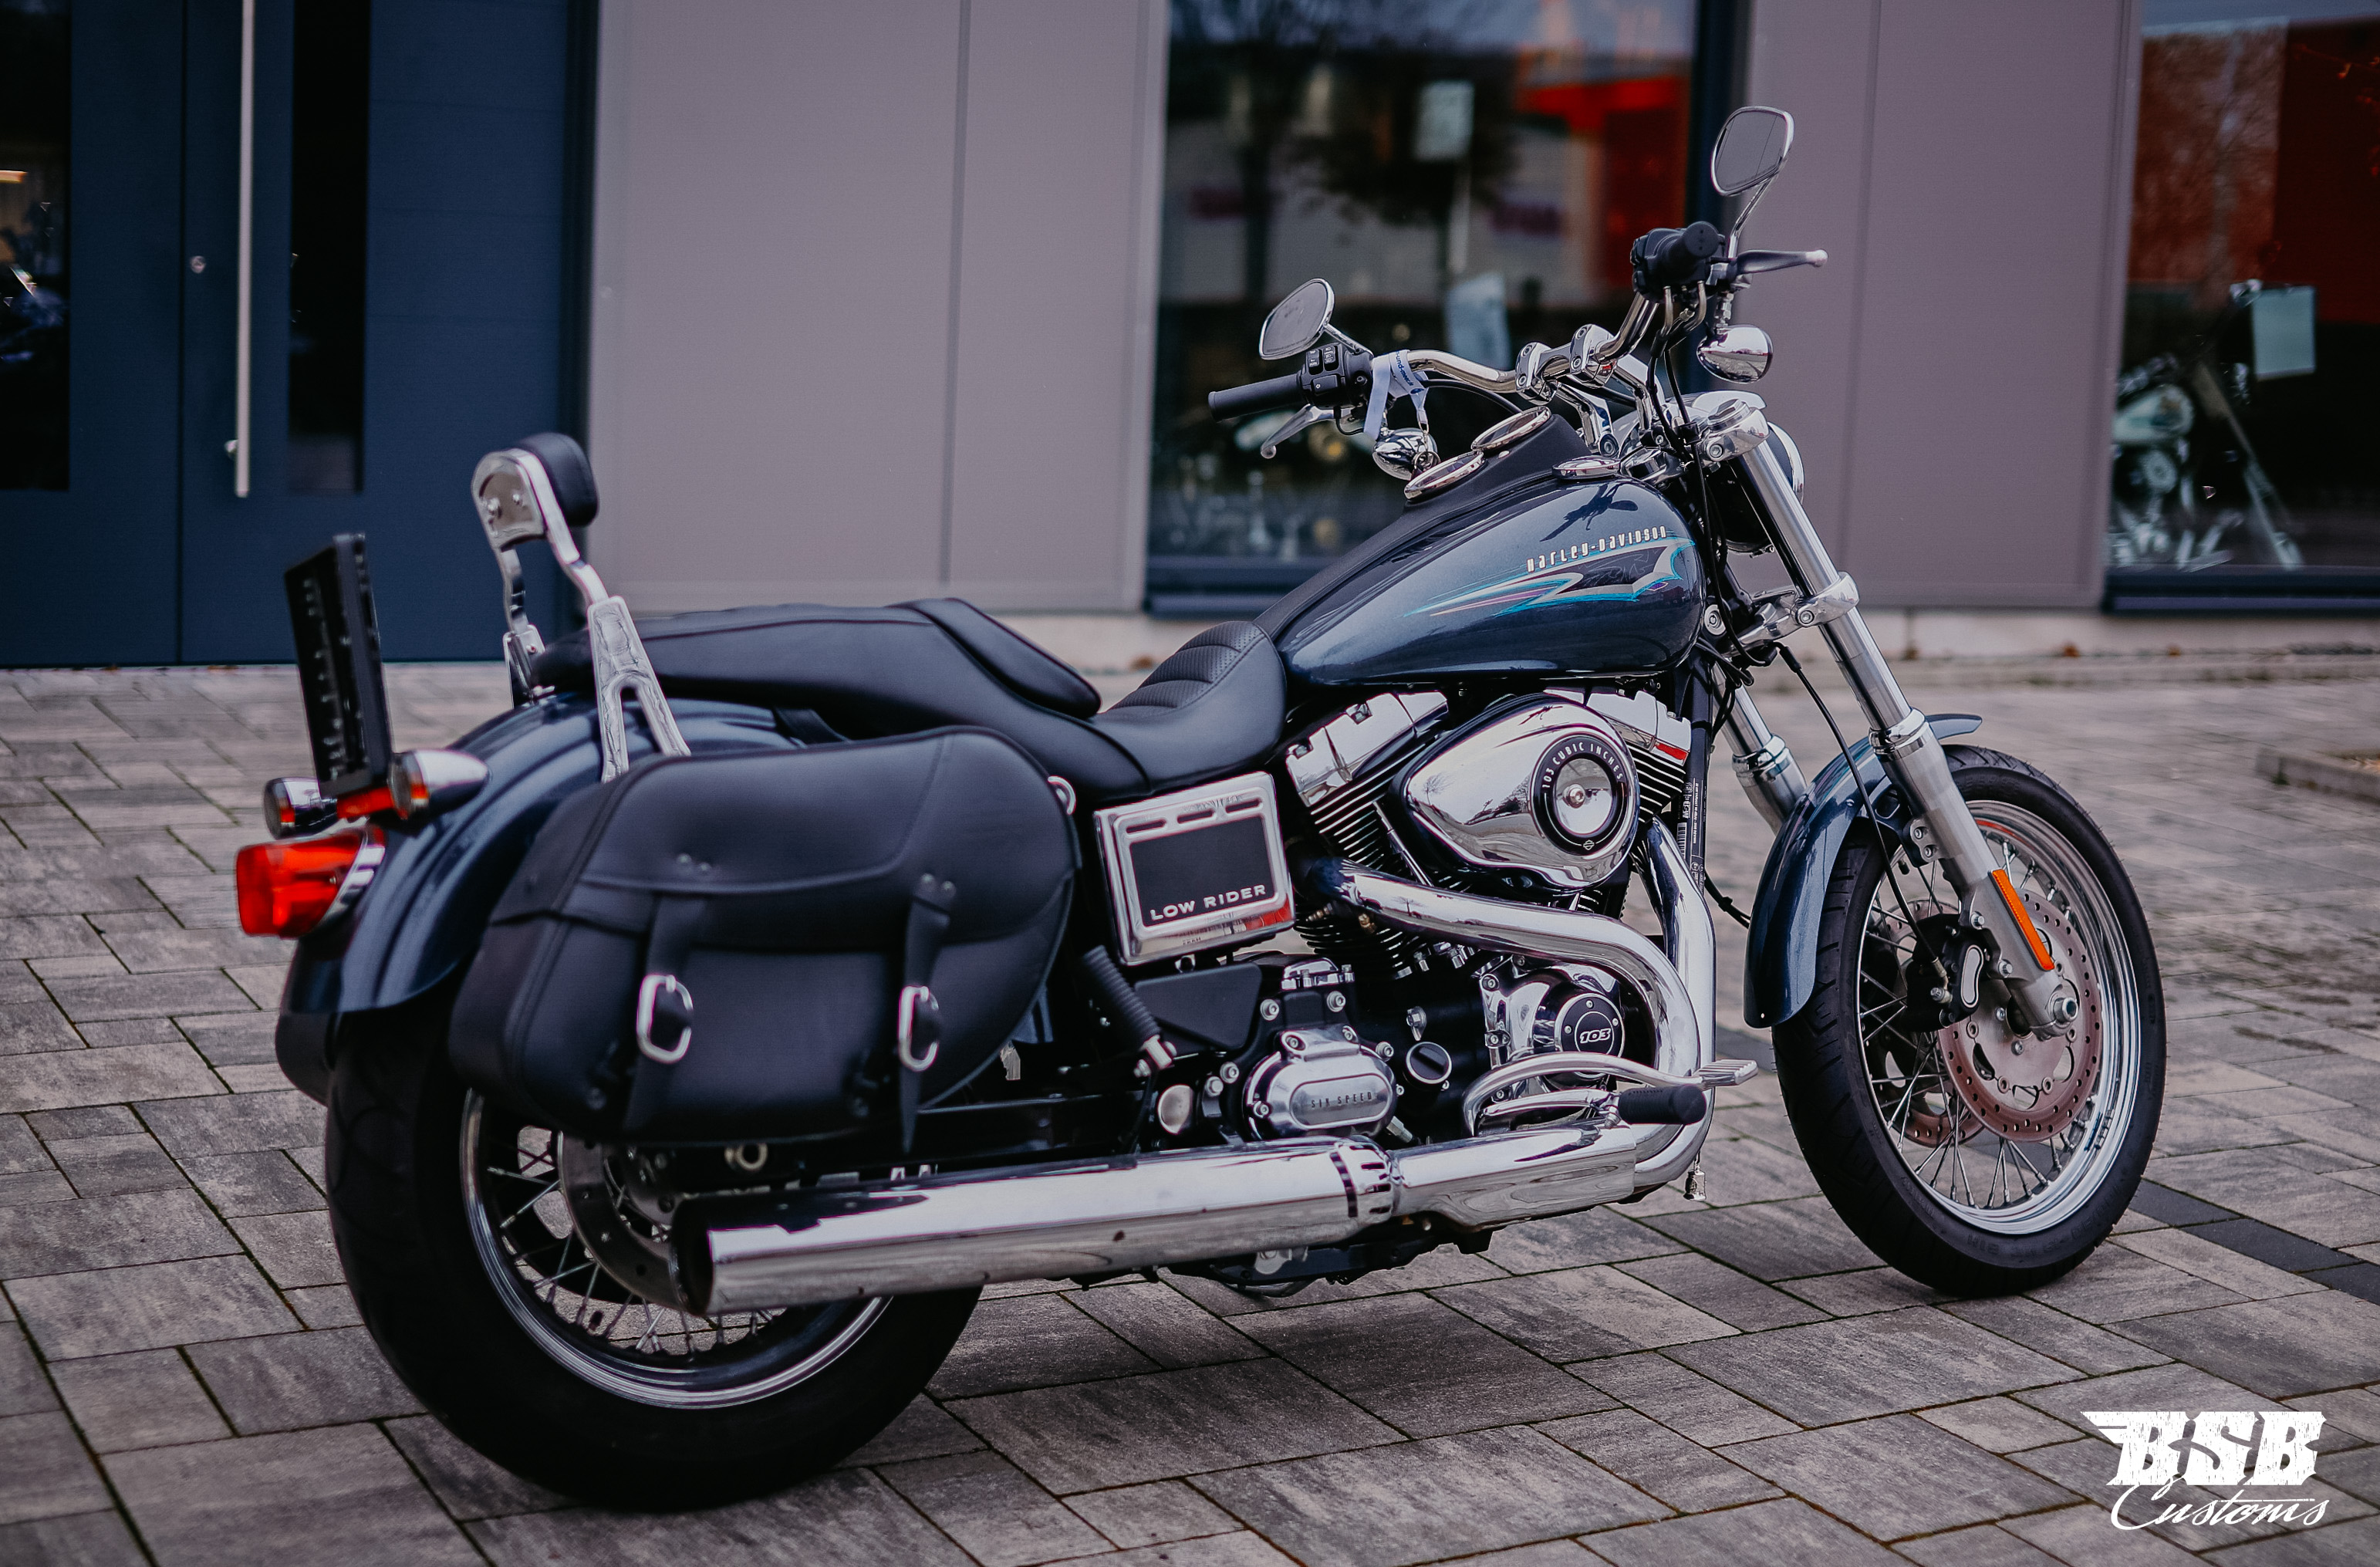 2015 Harley Davidson FXDL Low Rider 103 ABS 1690ccm bereits ab 158 EUR finanzieren*